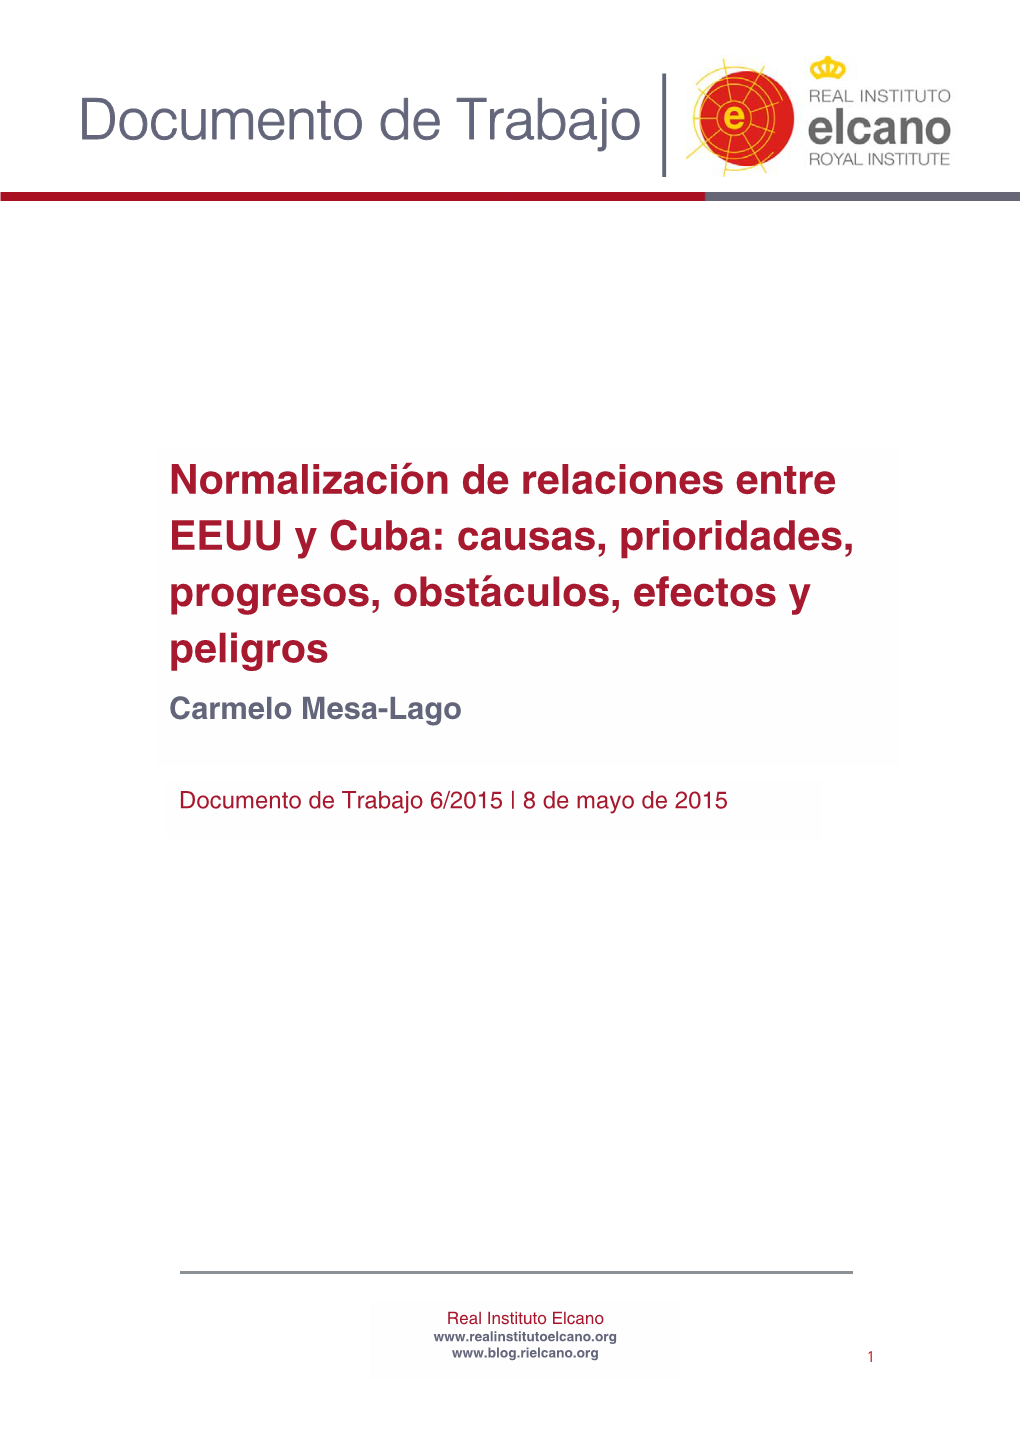 Normalización De Relaciones Entre EEUU Y Cuba: Causas, Prioridades, Progresos, Obstáculos, Efectos Y Peligros Carmelo Mesa-Lago